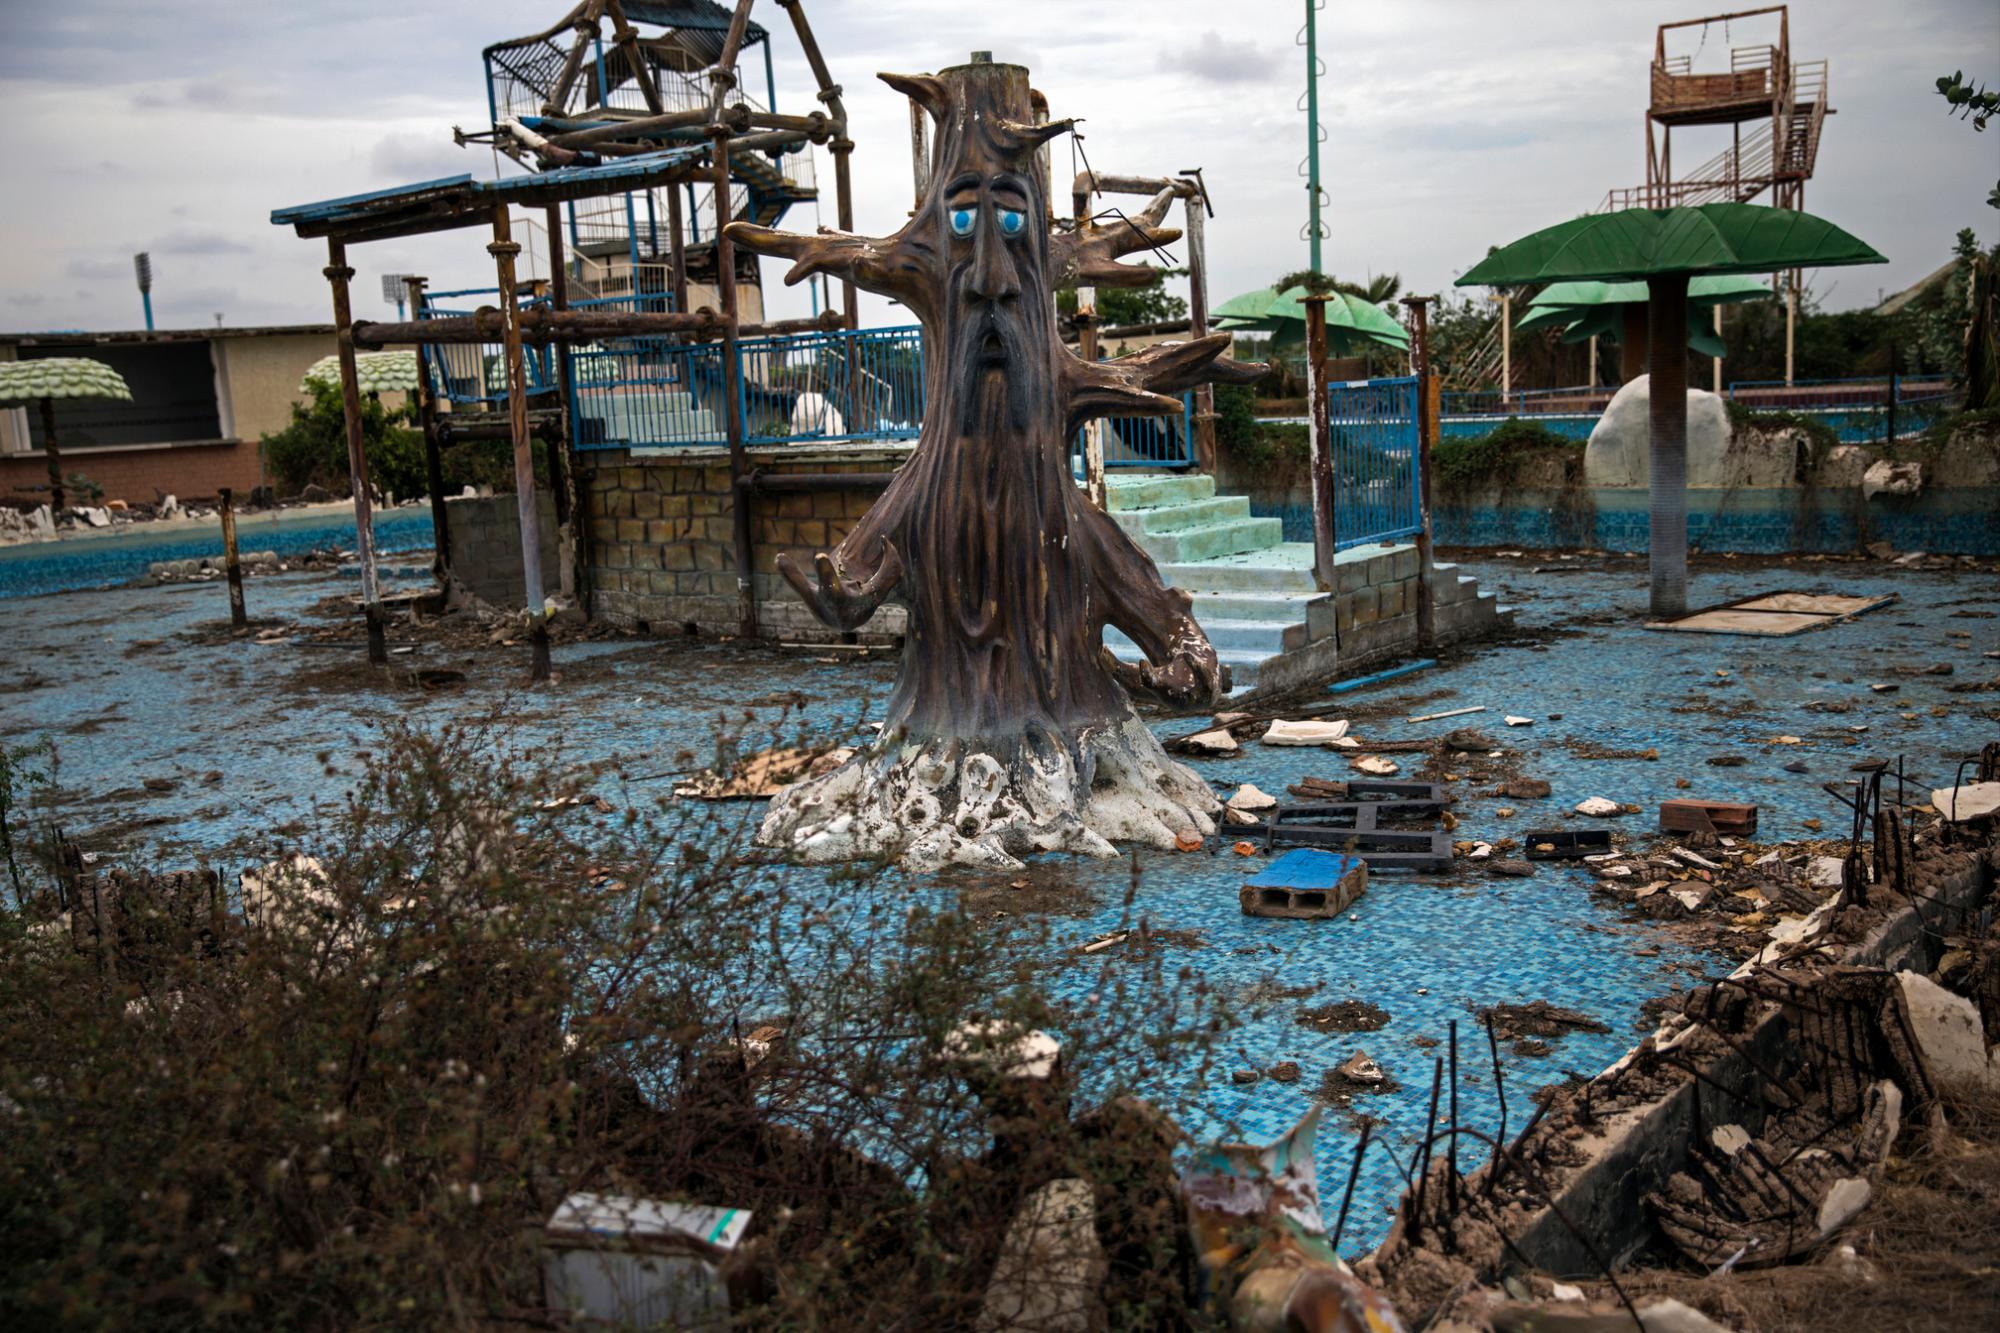 En la imagen, tomada el 23 de mayo de 2019, una piscina temática en ruinas en el abandonado parque de diversiones Diversiones Grano de Oro, en Maracaibo, Venezuela. En la ciudad, muchas estructuras están llenas de escombros en una imagen que recuerda a una zona de guerra o a las consecuencias de un desastre natural.